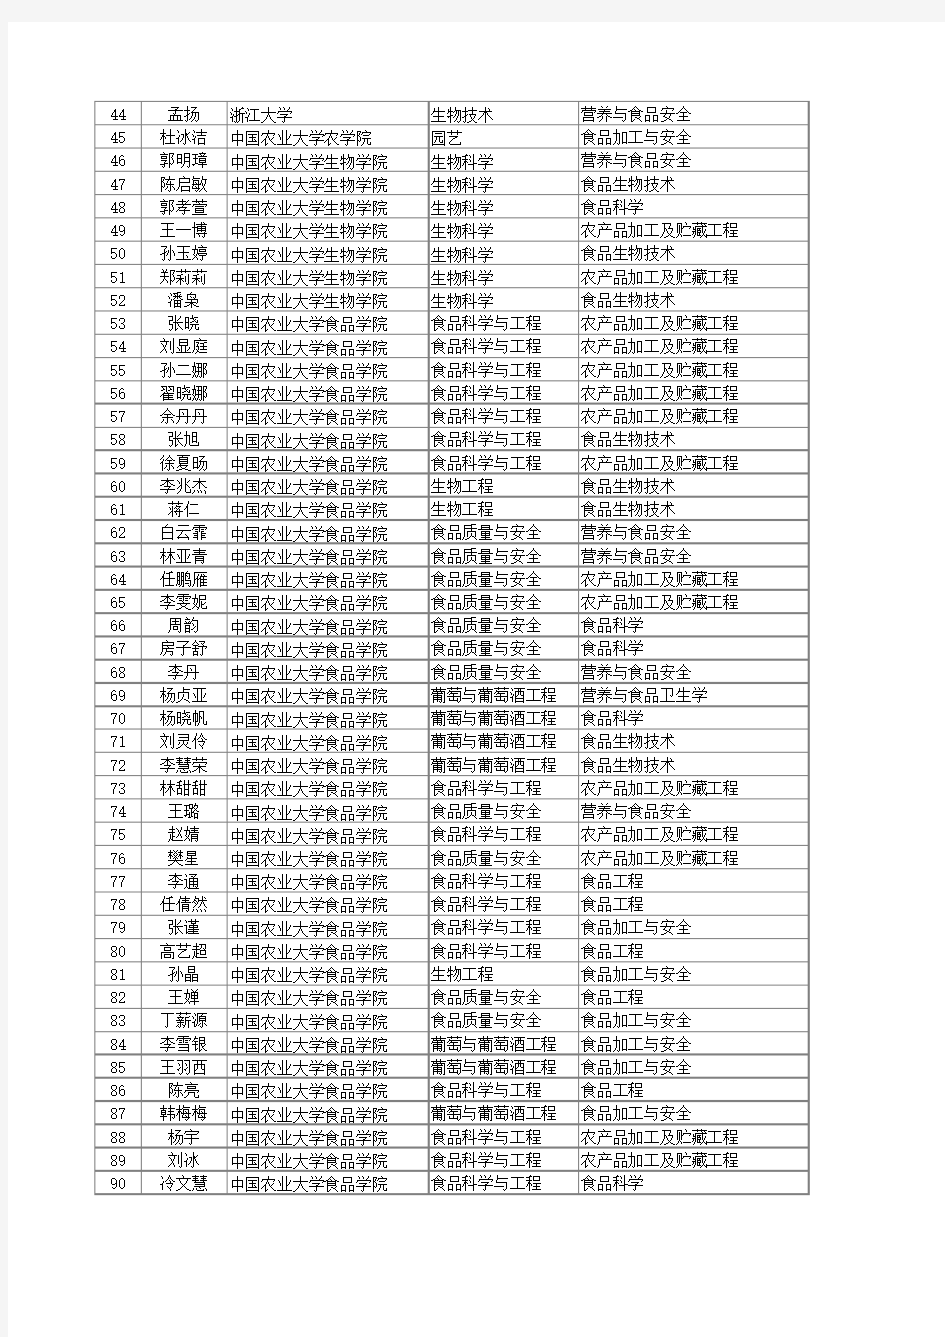 中国农业大学食品学院保研名单